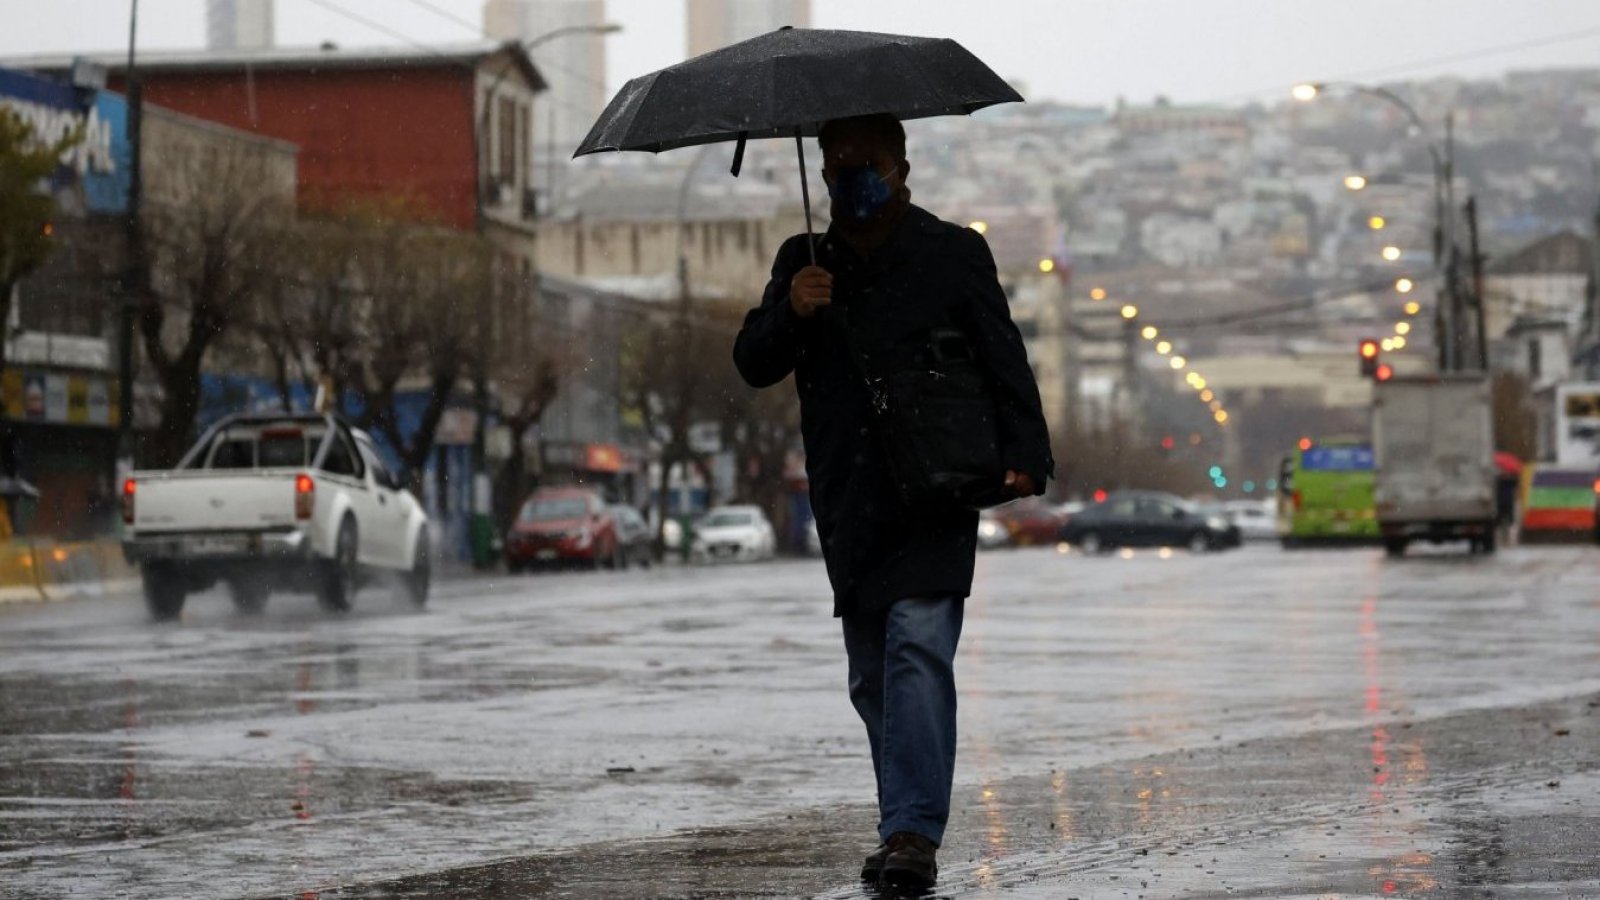 Lluvias en Santiago. Hombre con paraguas.